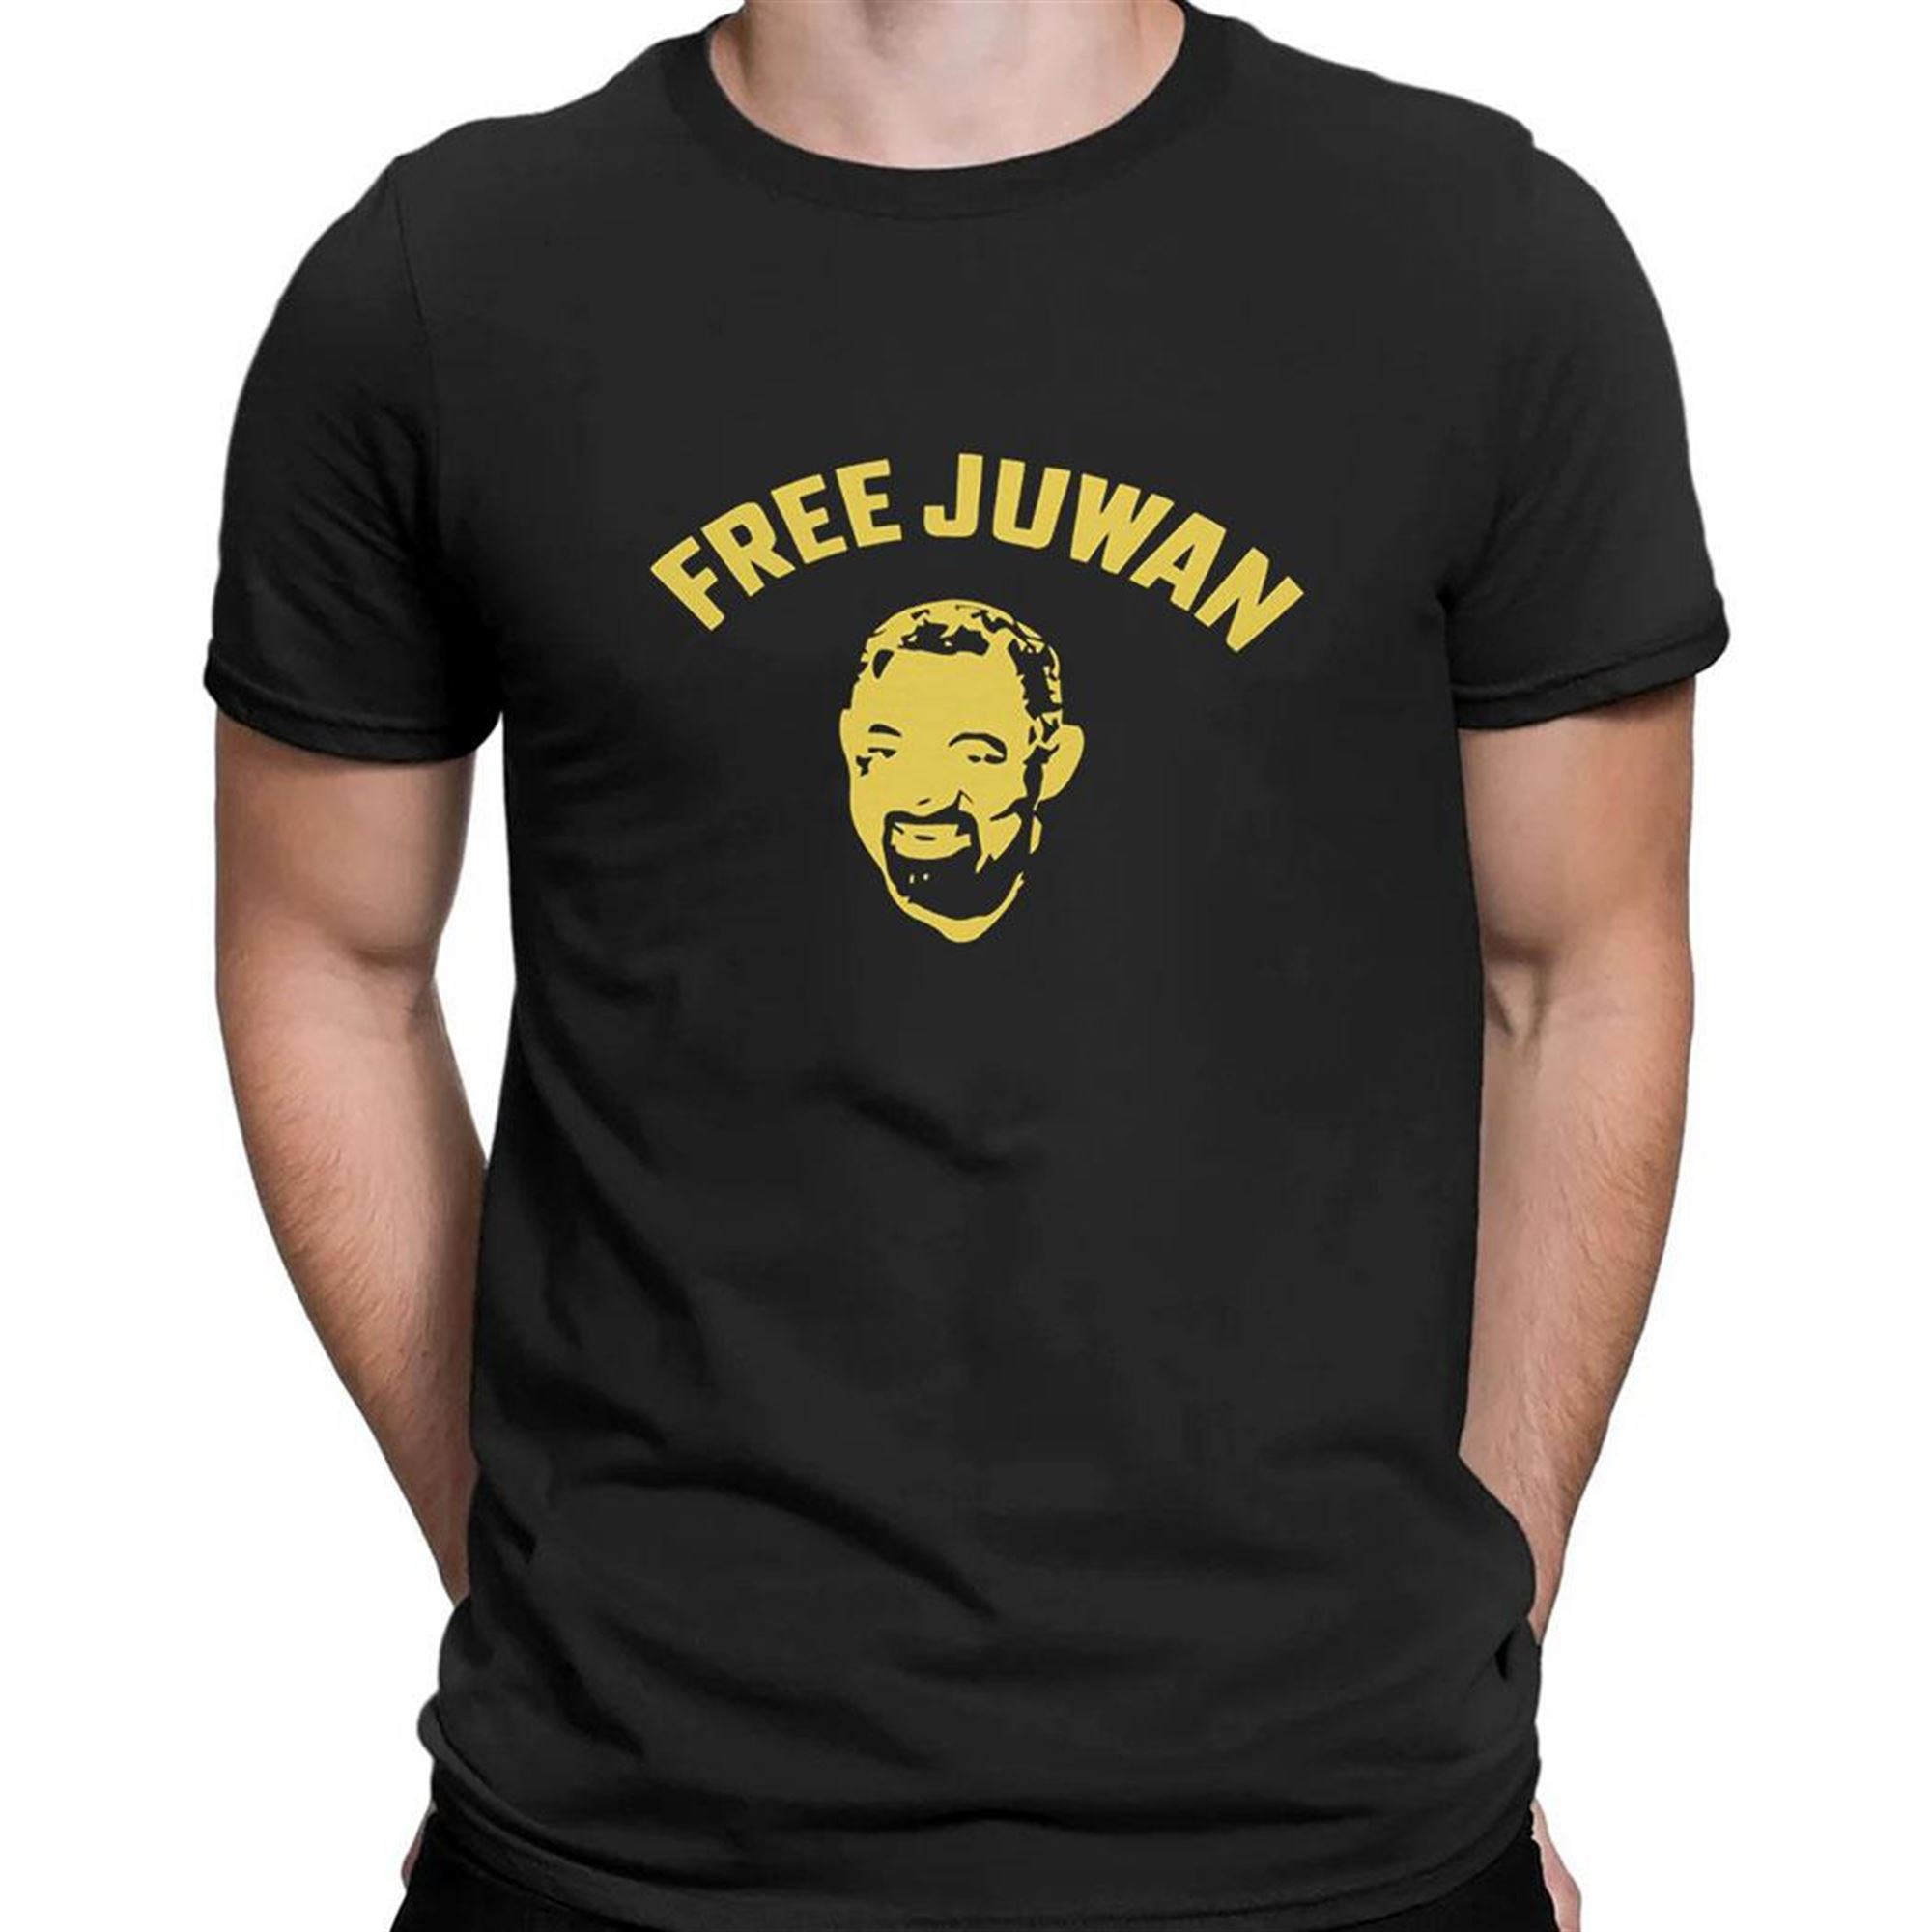 Jimmy Bell Jr 15 Shirt